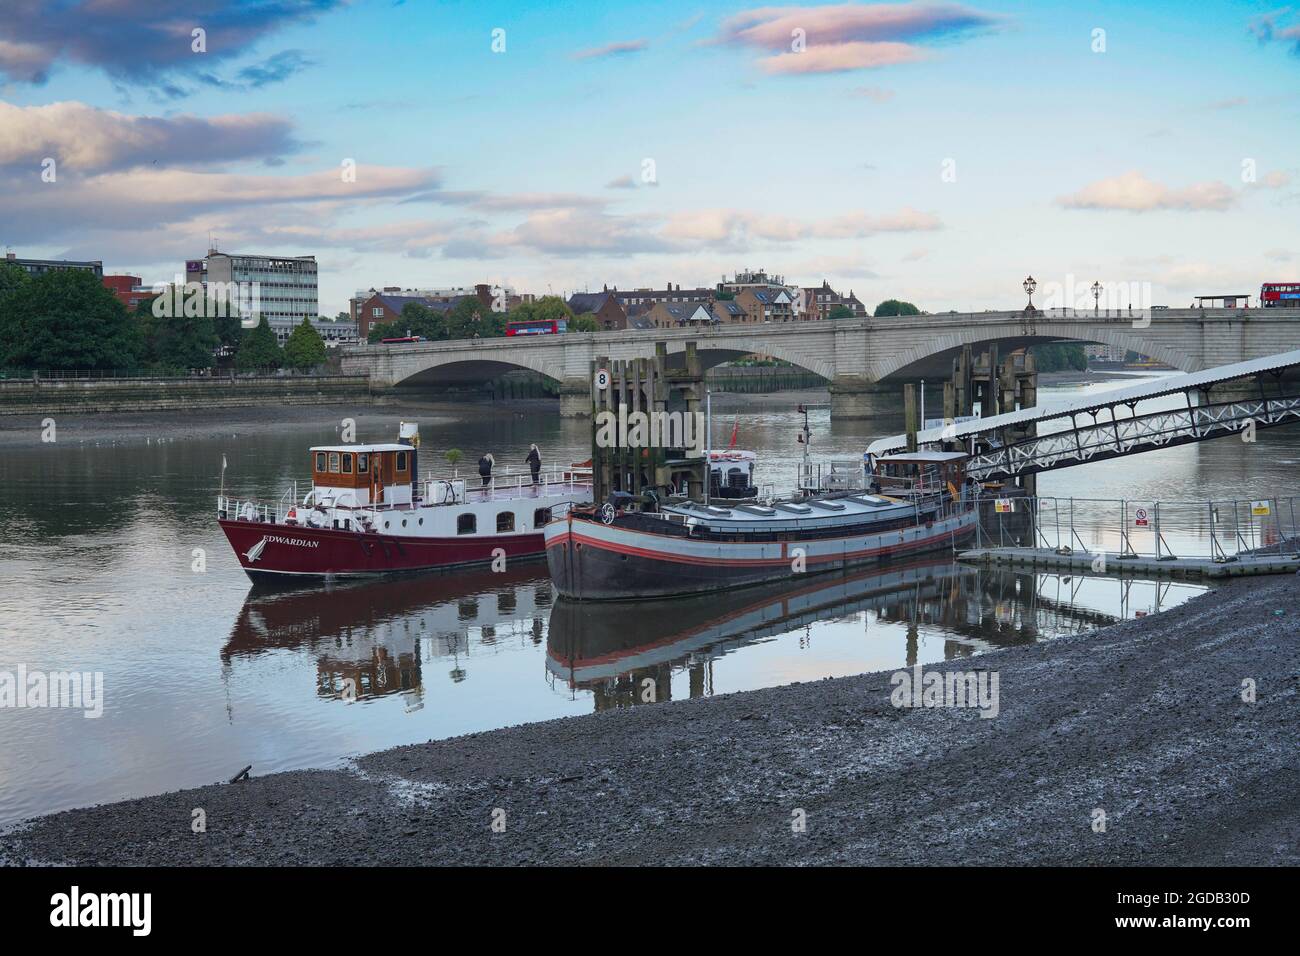 Vue sur Putney Pier et Putney Bridge en arrière-plan, avec le bateau édouardien MV qui attend d'embarquer pour une croisière sur la rivière. Date de la photo : vendredi 6 août Banque D'Images